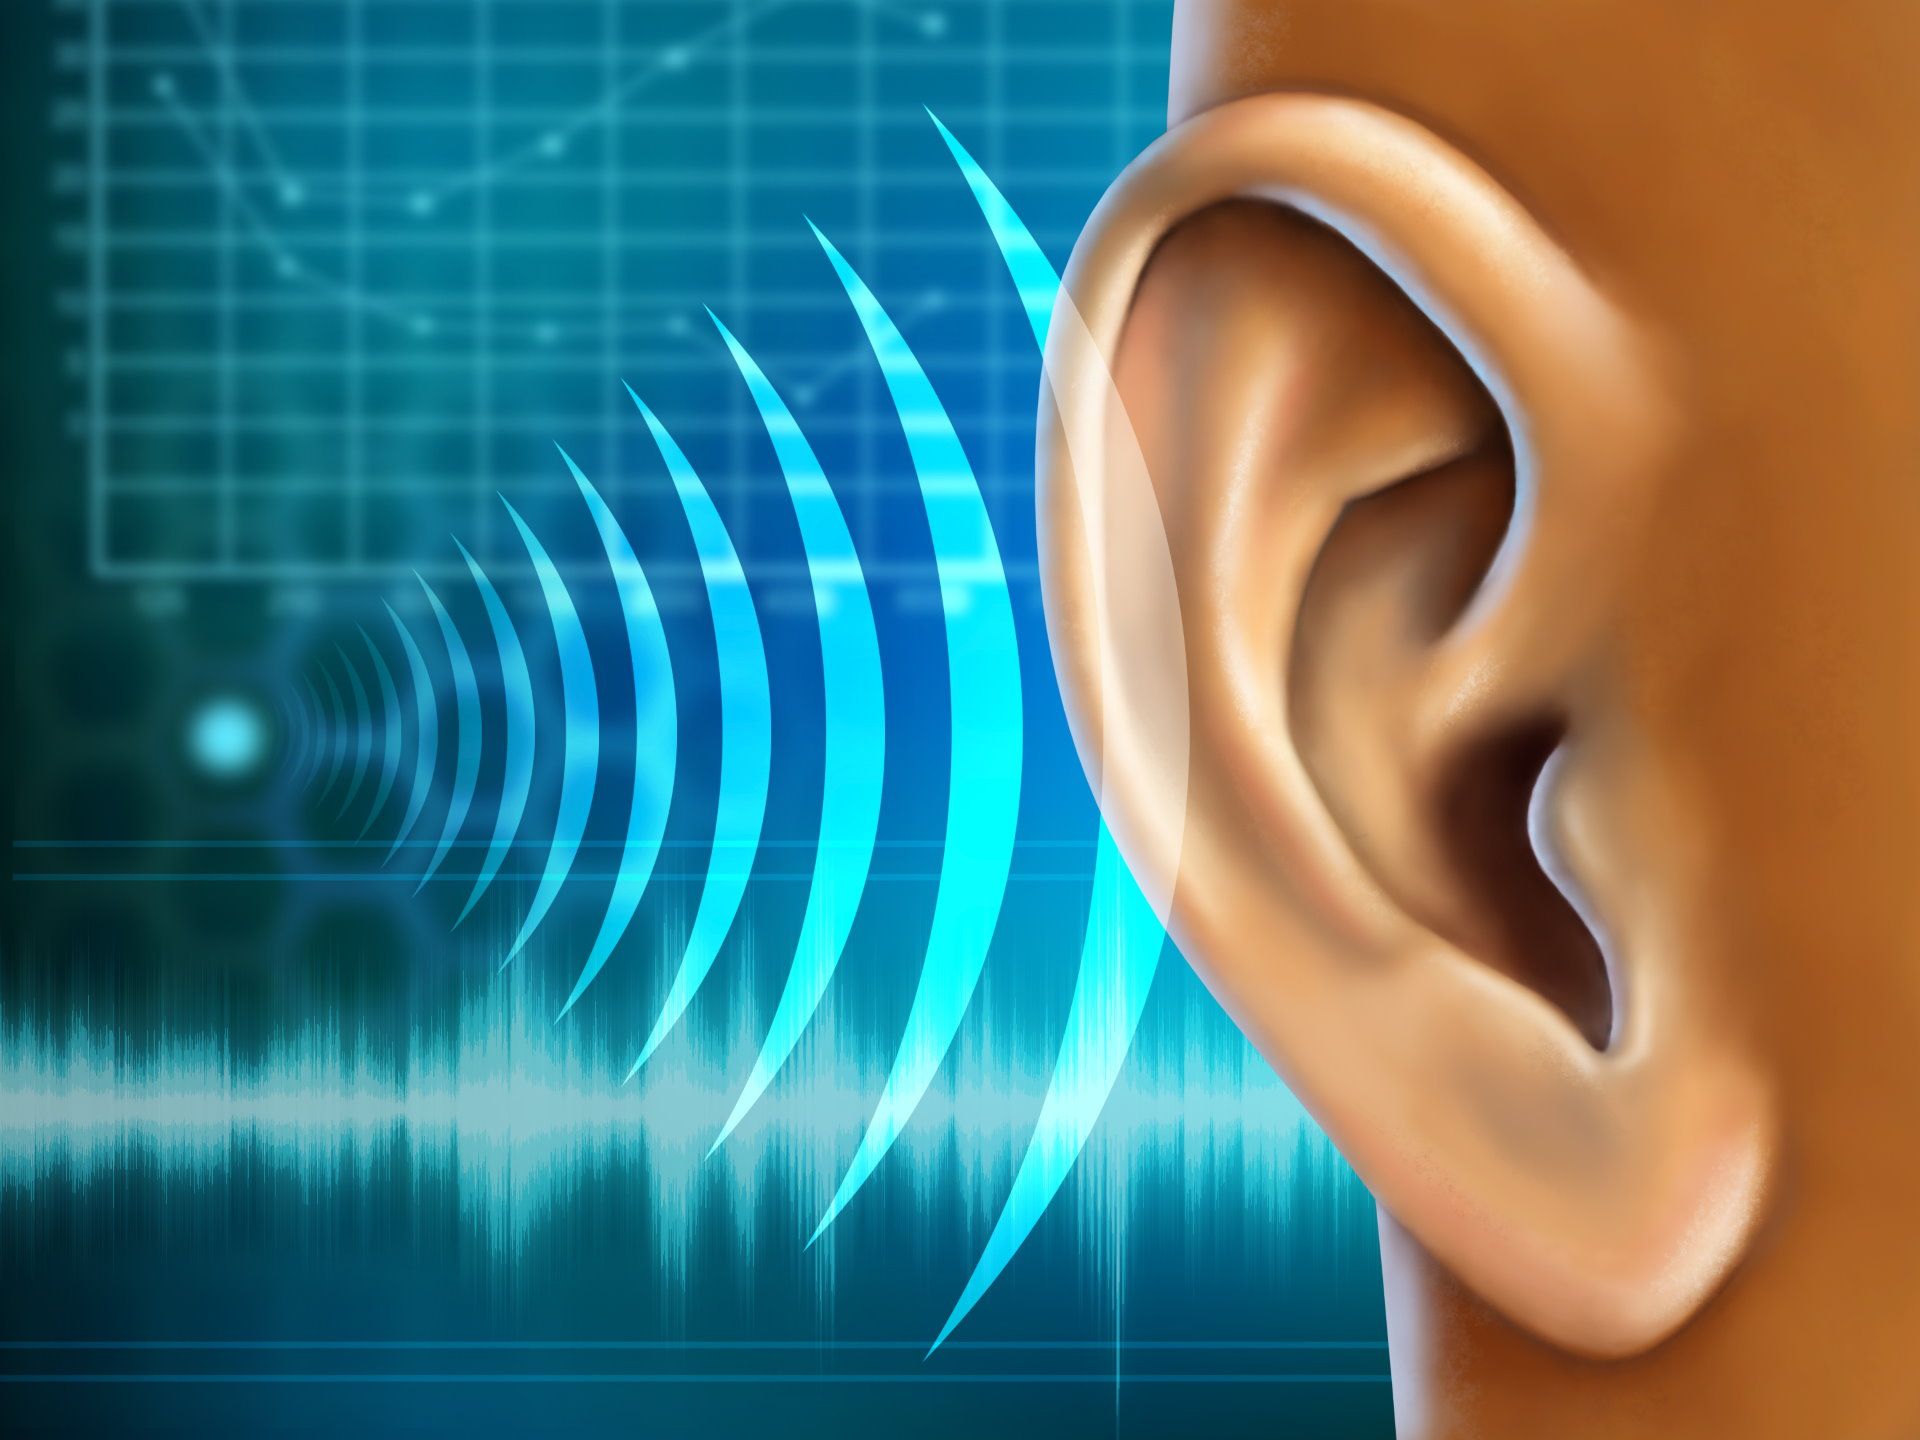 Free-hearing-screening image